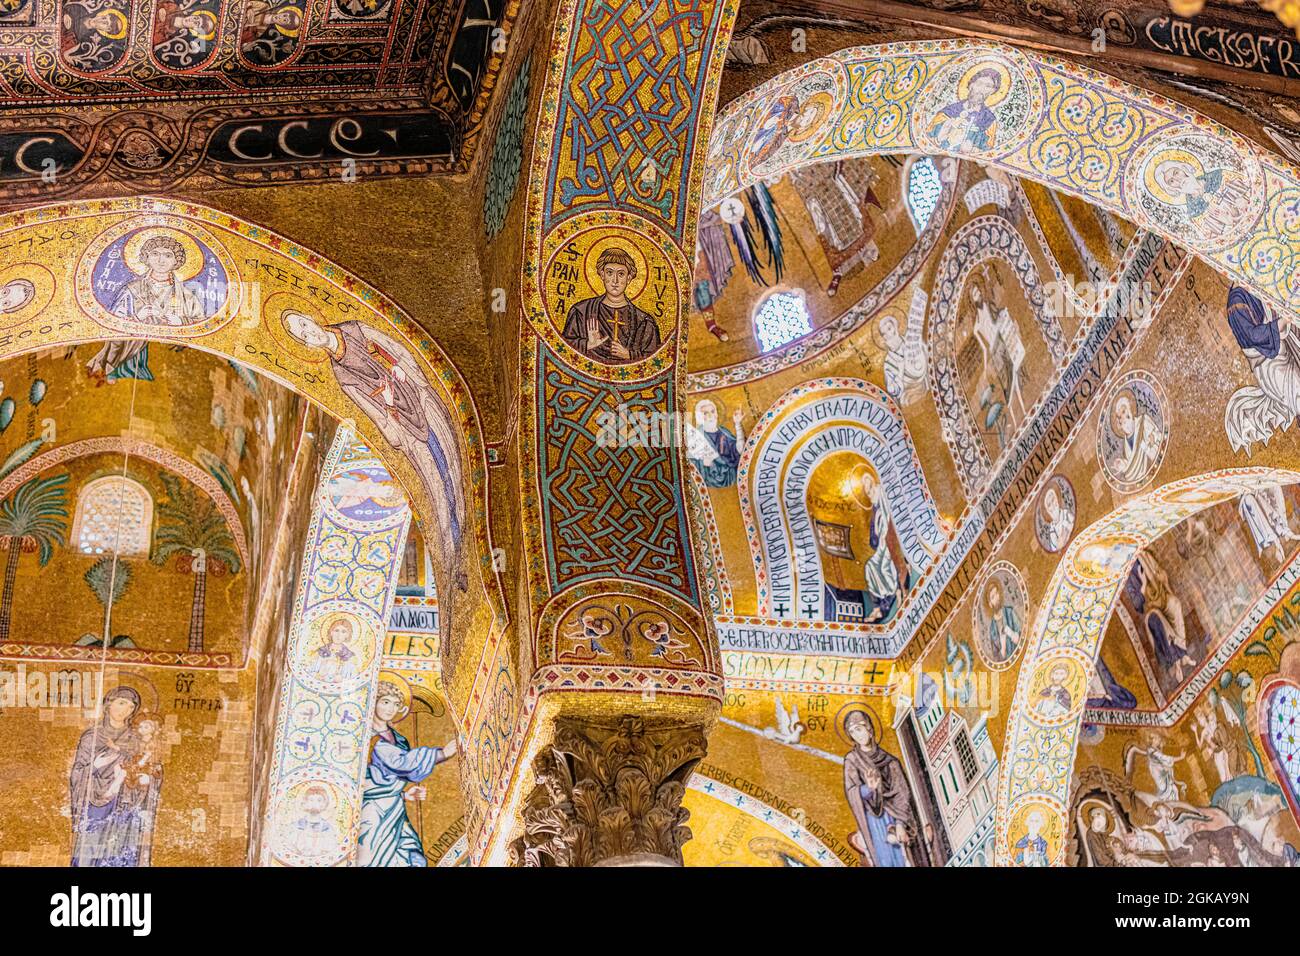 détail de la mosaïque dans la chapelle palatine de palerme. Italie. Banque D'Images